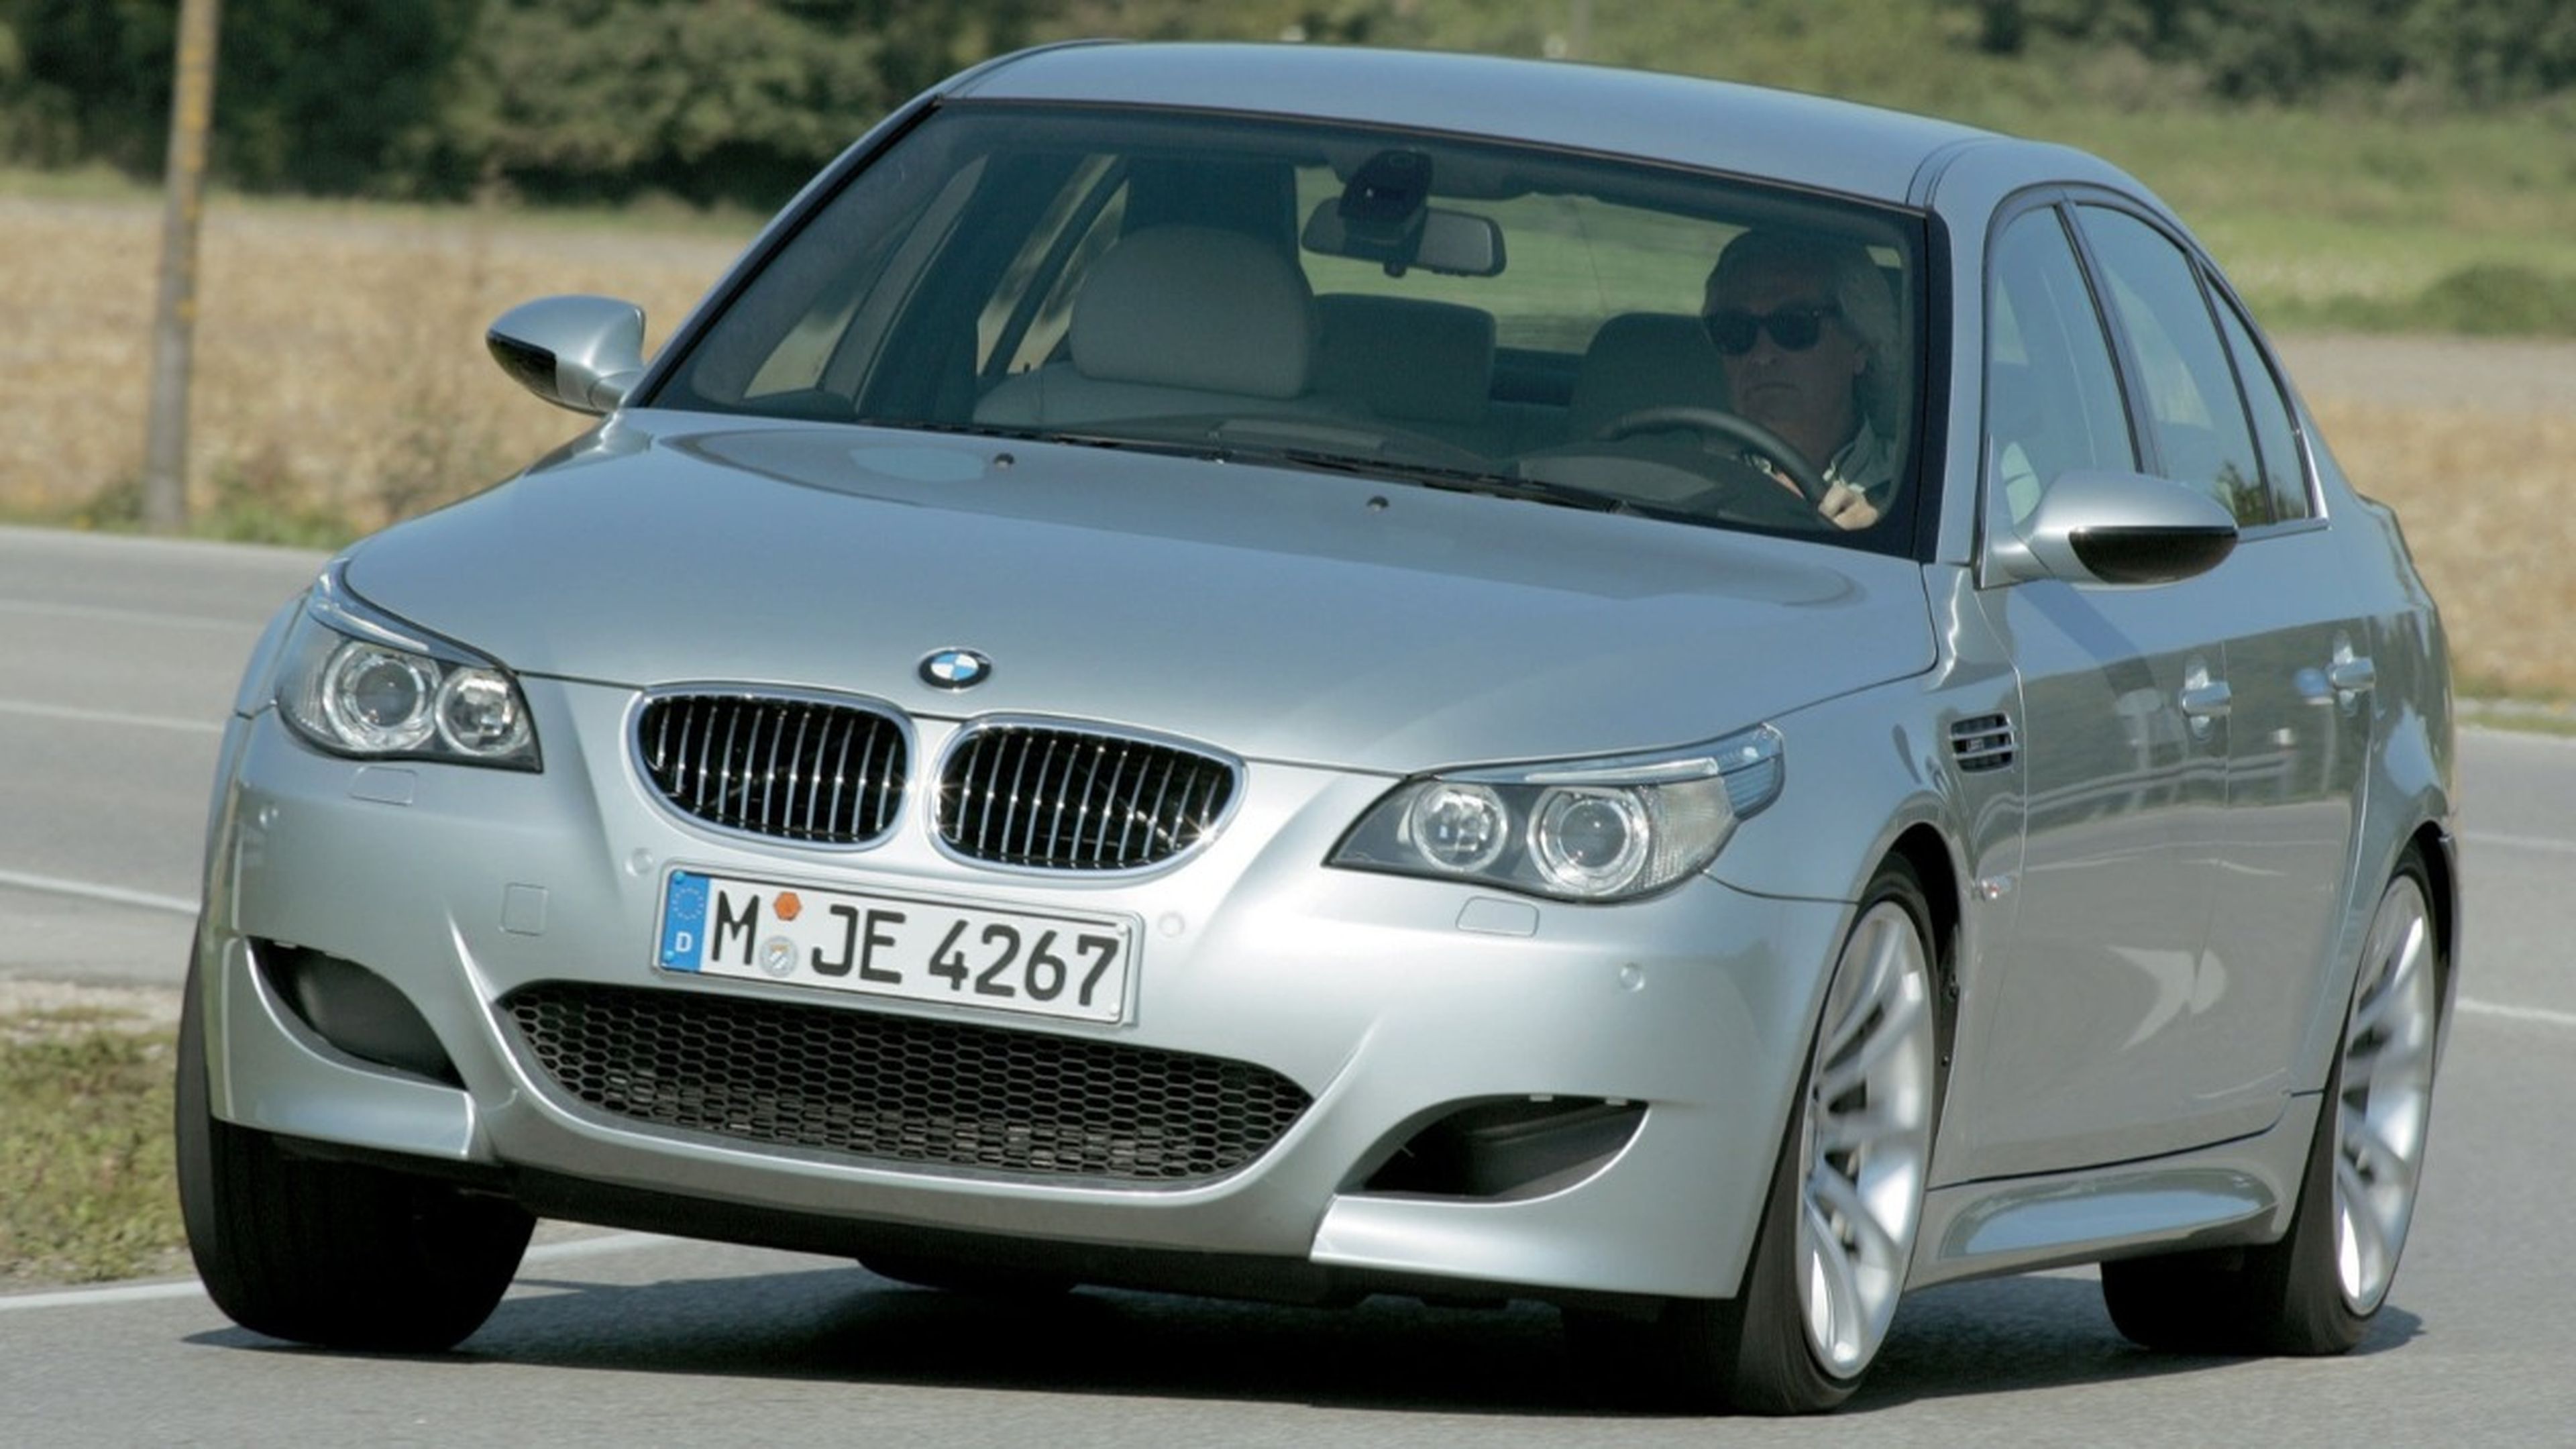 BMW M5 E60 de segunda mano. ¡La guía de compra definitiva!